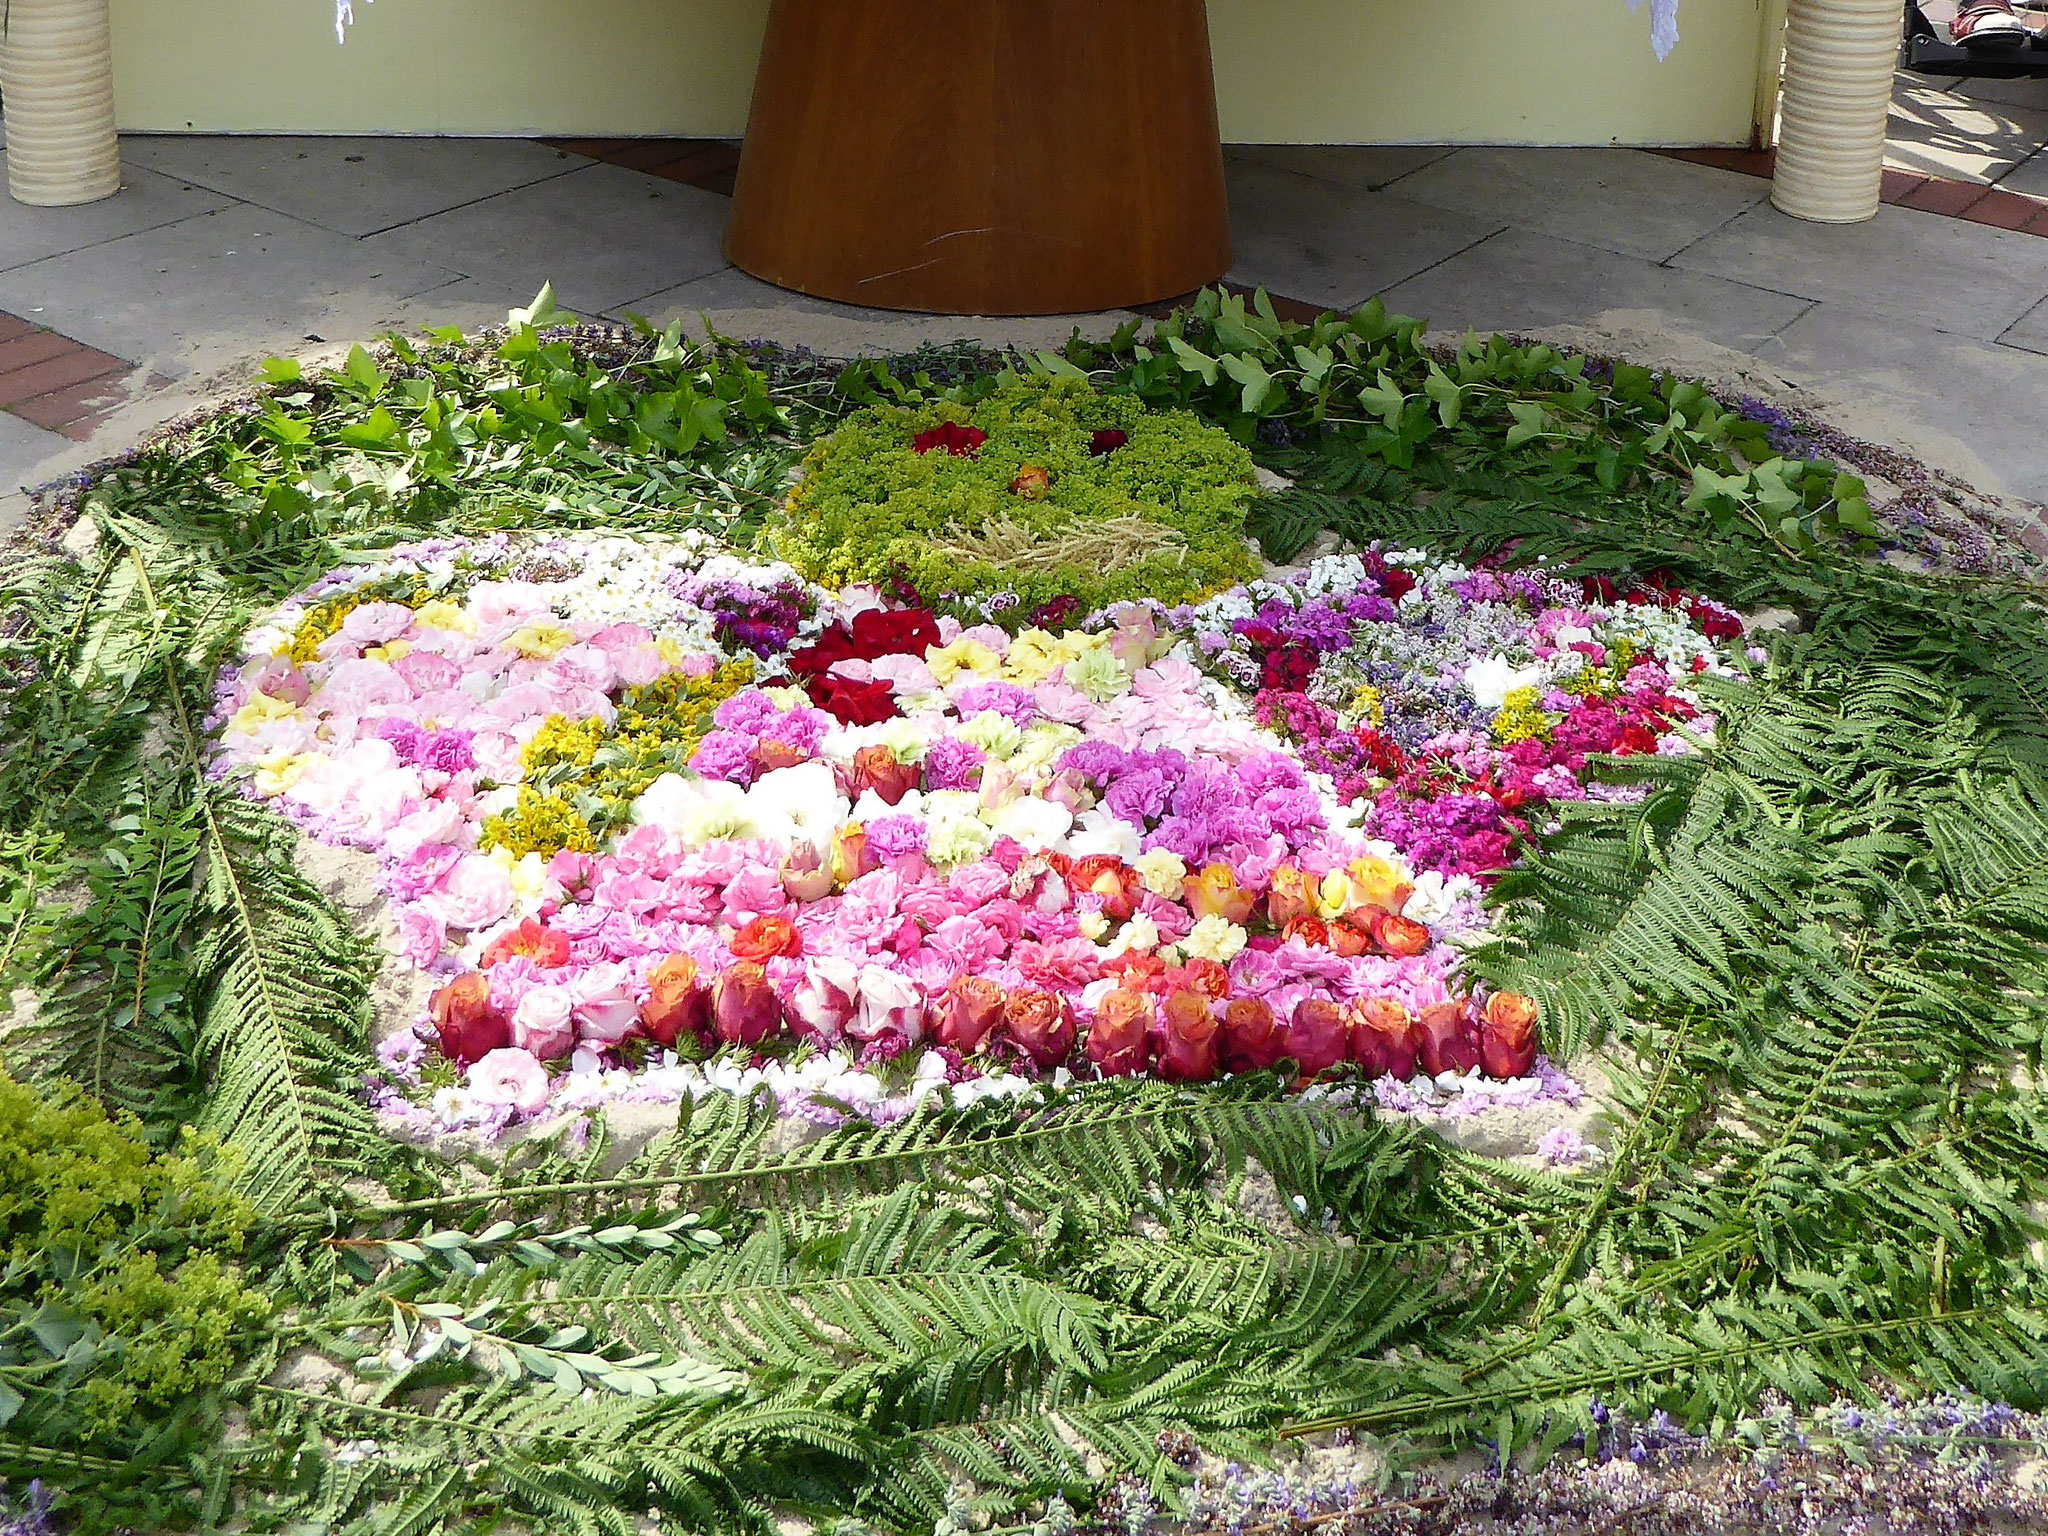 Blumenteppich - ein Engel - gelegt von den Kommunionkindern